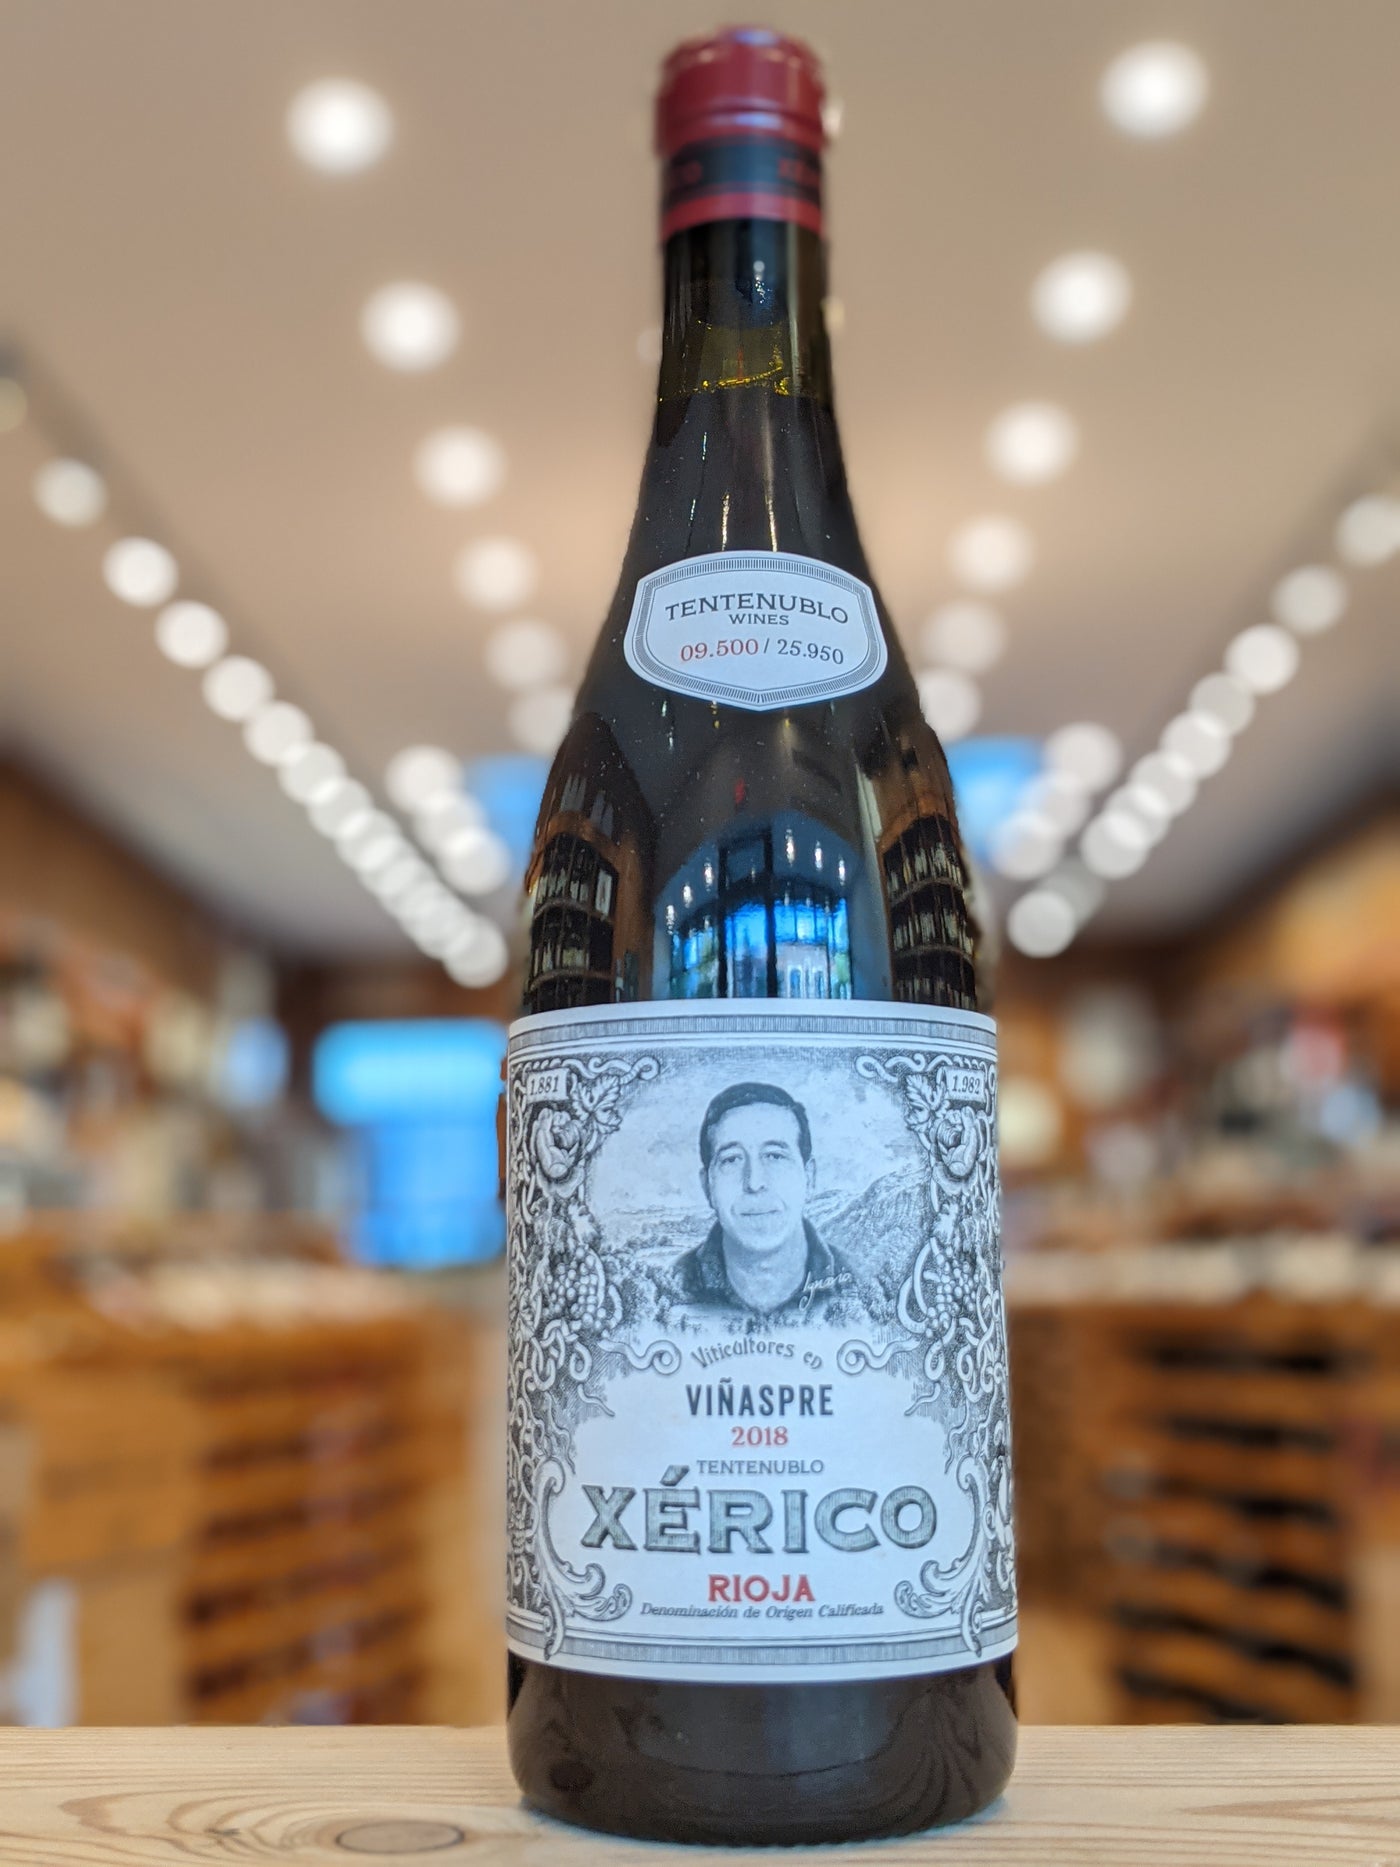 Tentenublo Rioja Xerico 2018